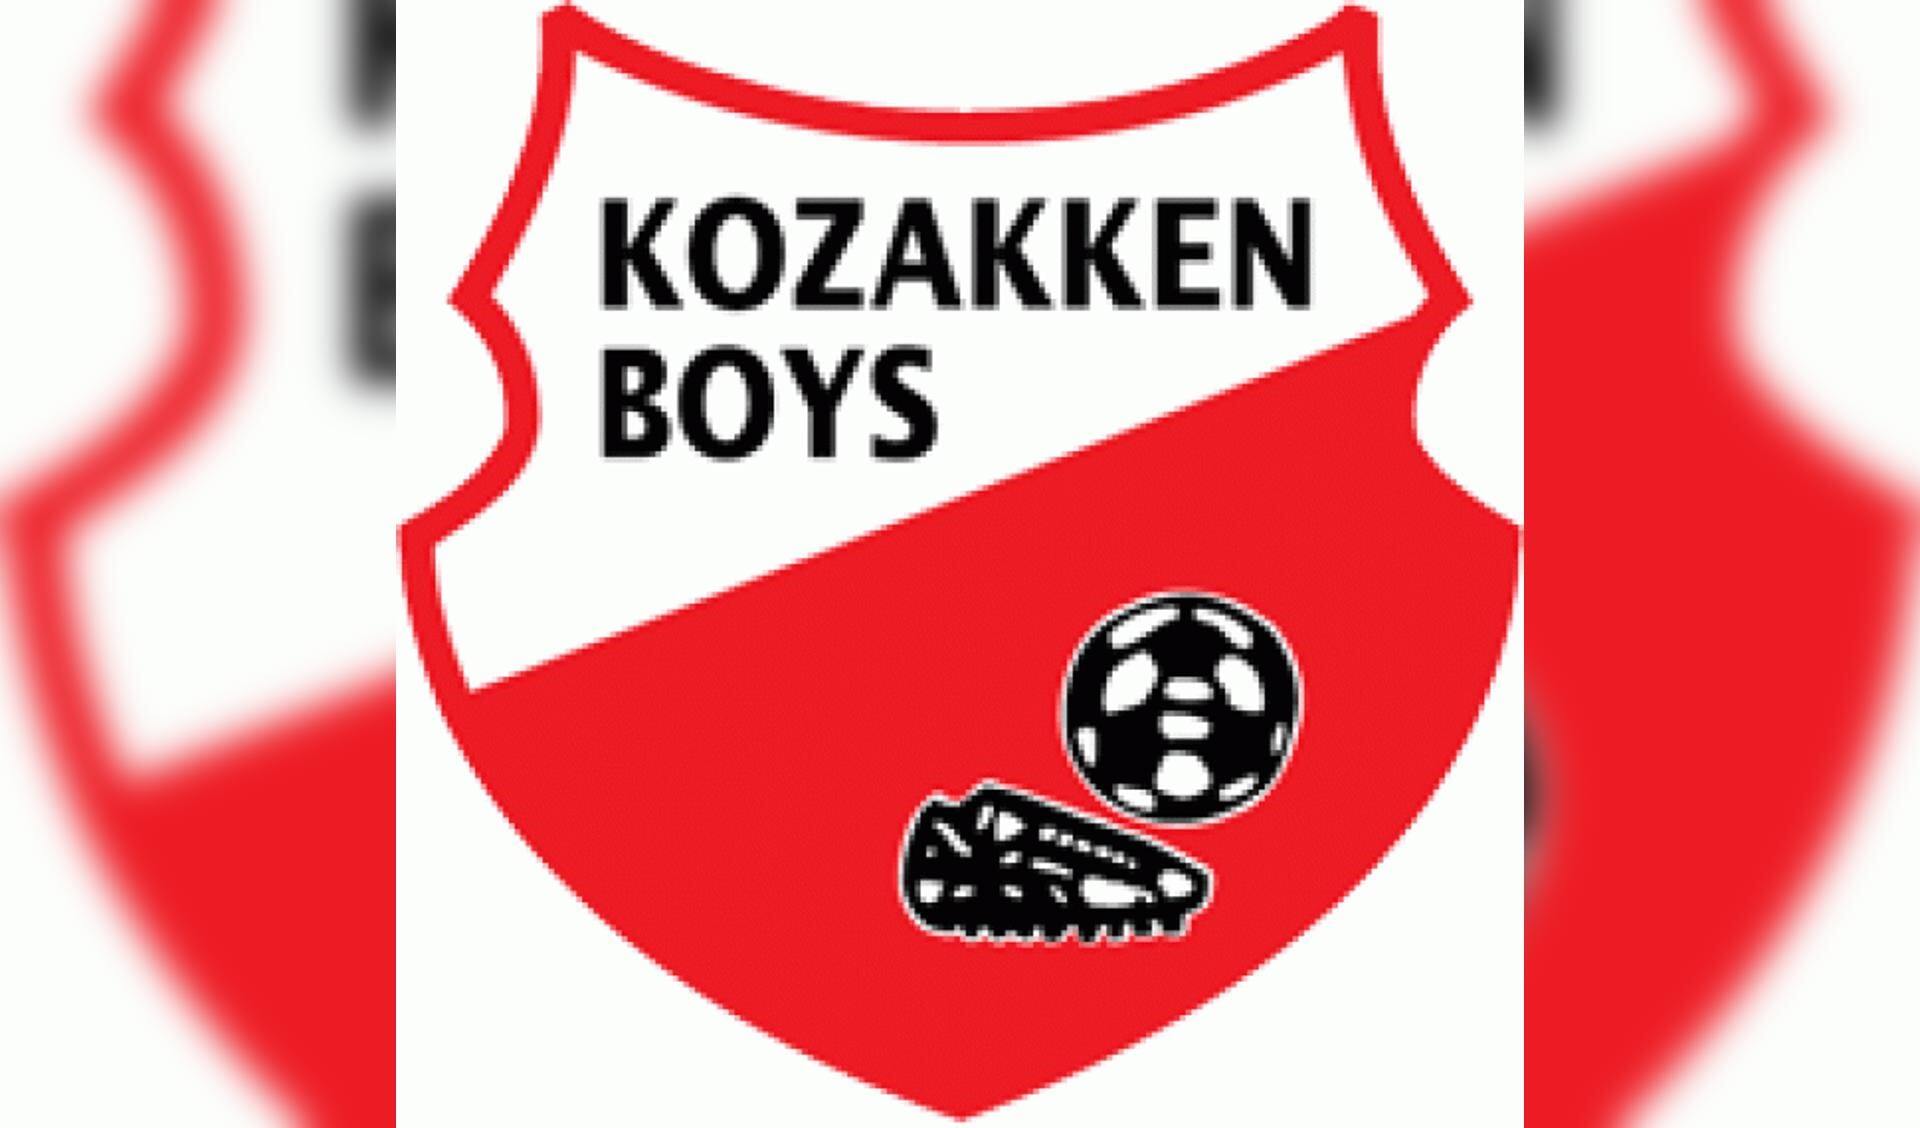 Kozakken Boys-GVVV om 17:00 uur